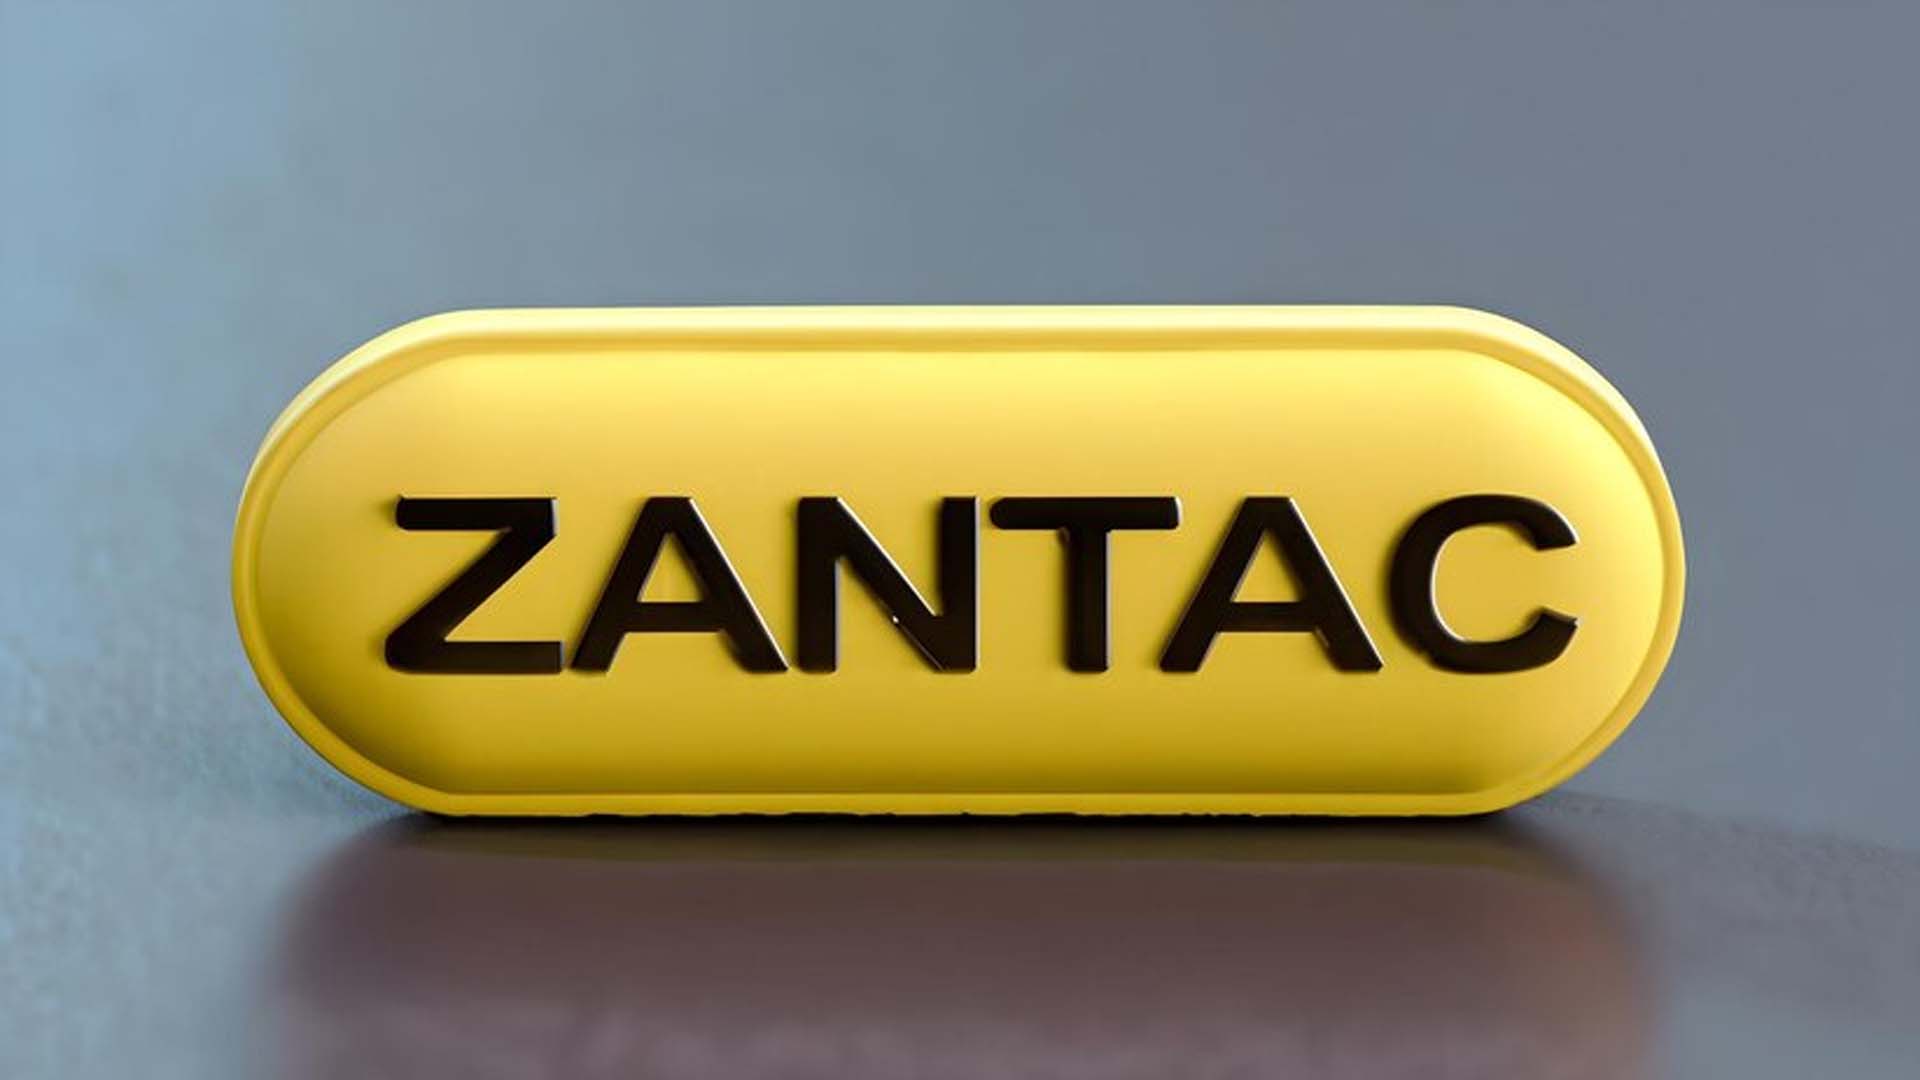 Zantac